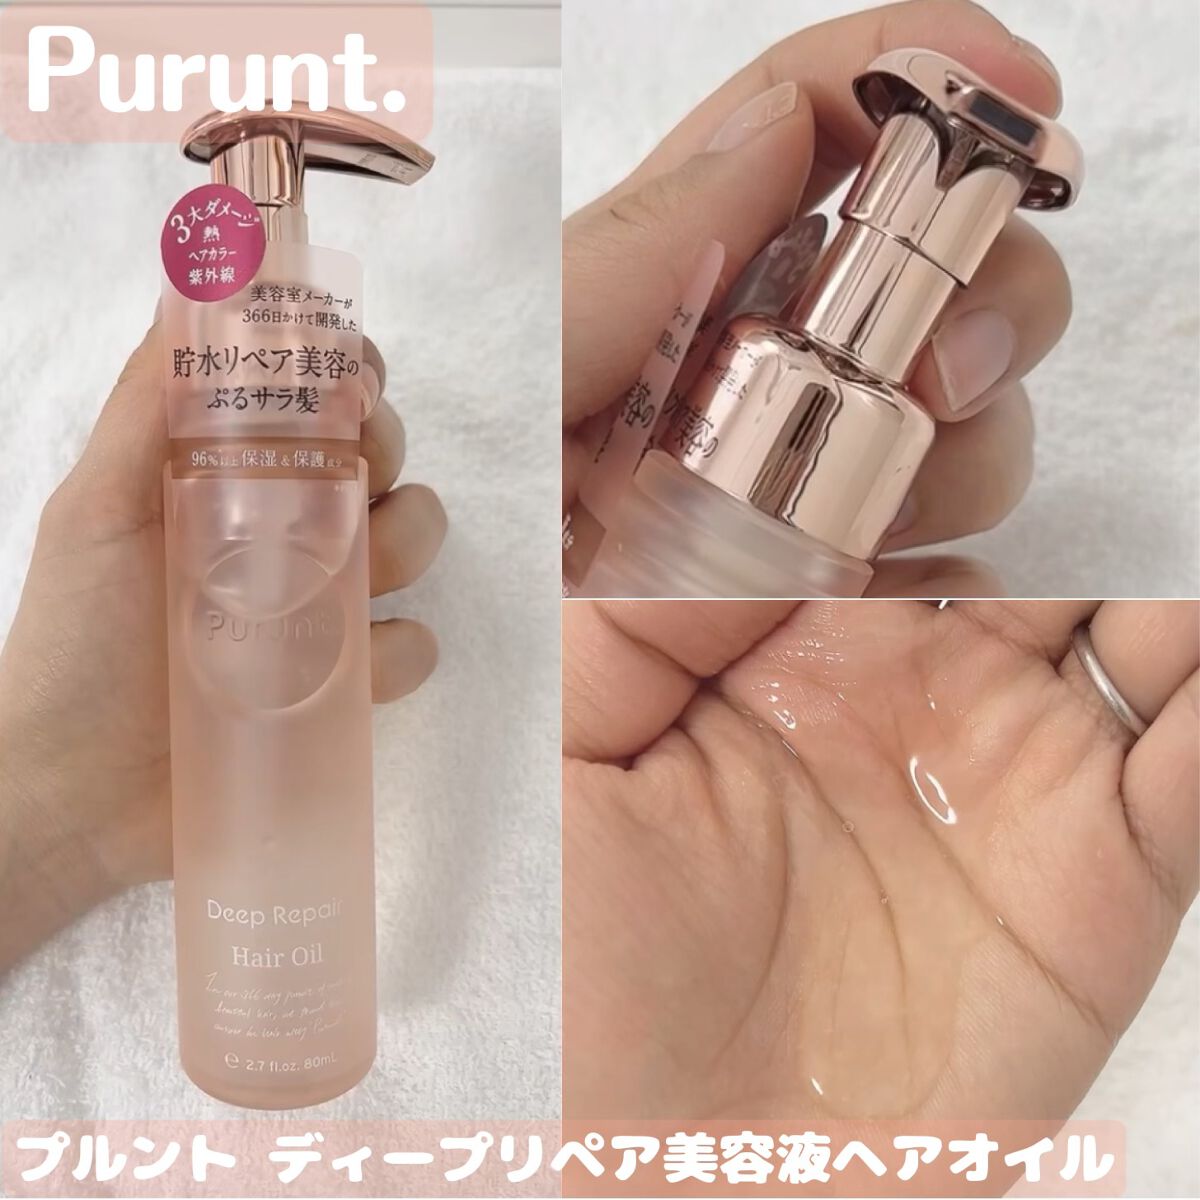 注目のブランド 新品 Purunt プルント ディープリペア 美容液